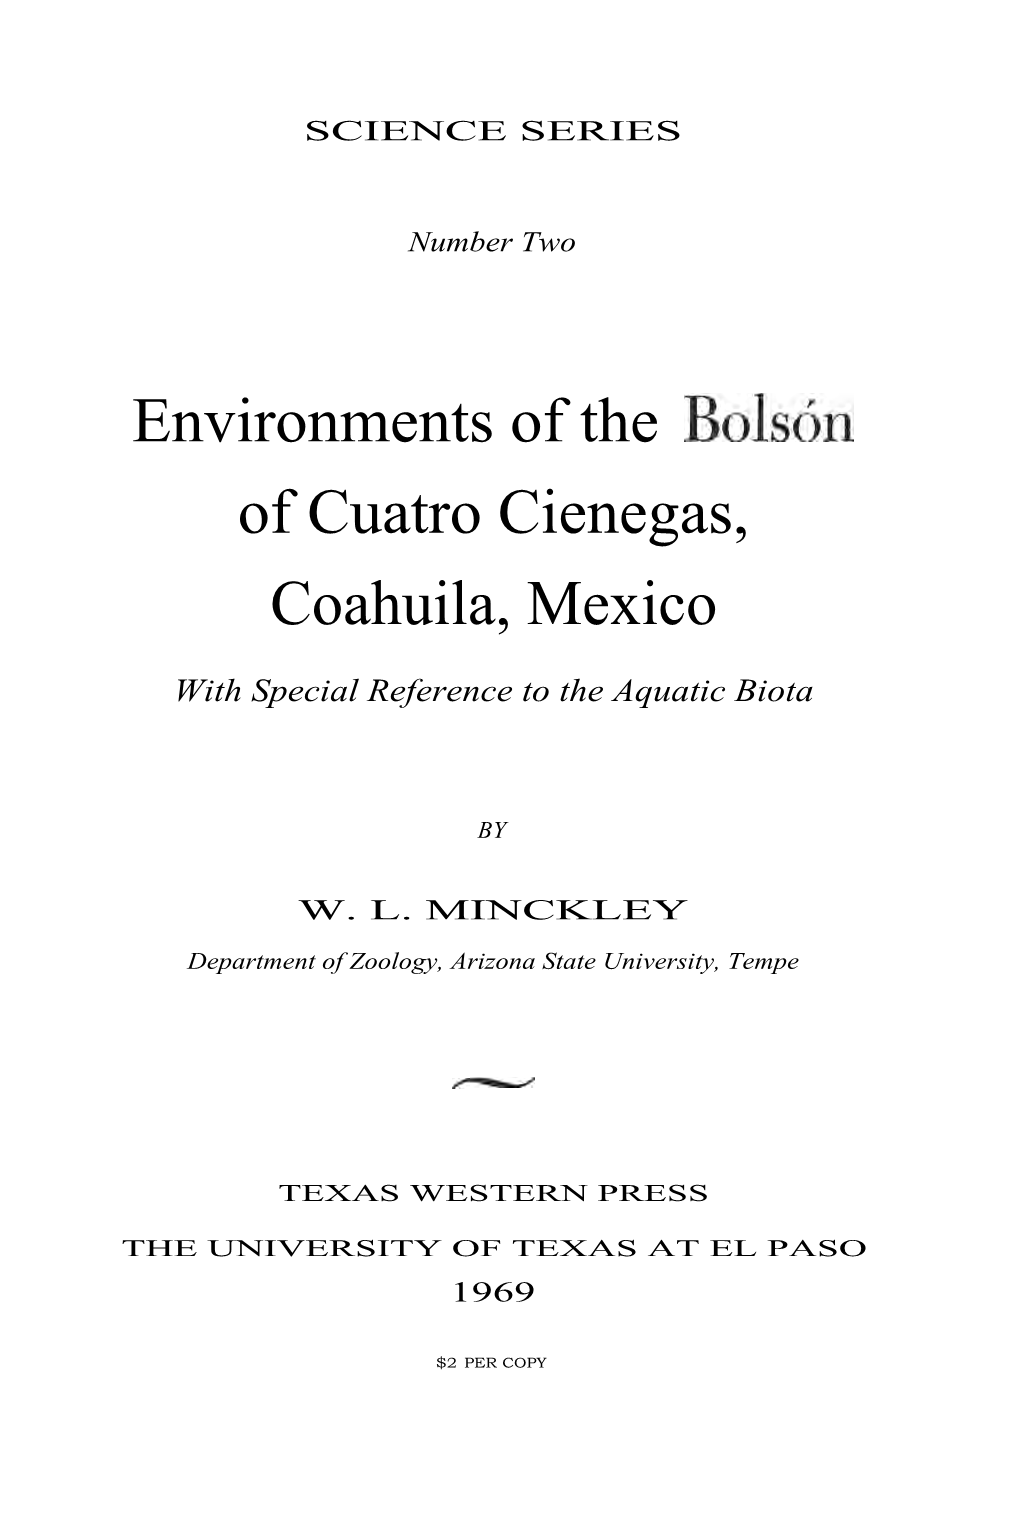 Environments of the Bolson of Cuatro Cienegas, Coahuila, Mexico